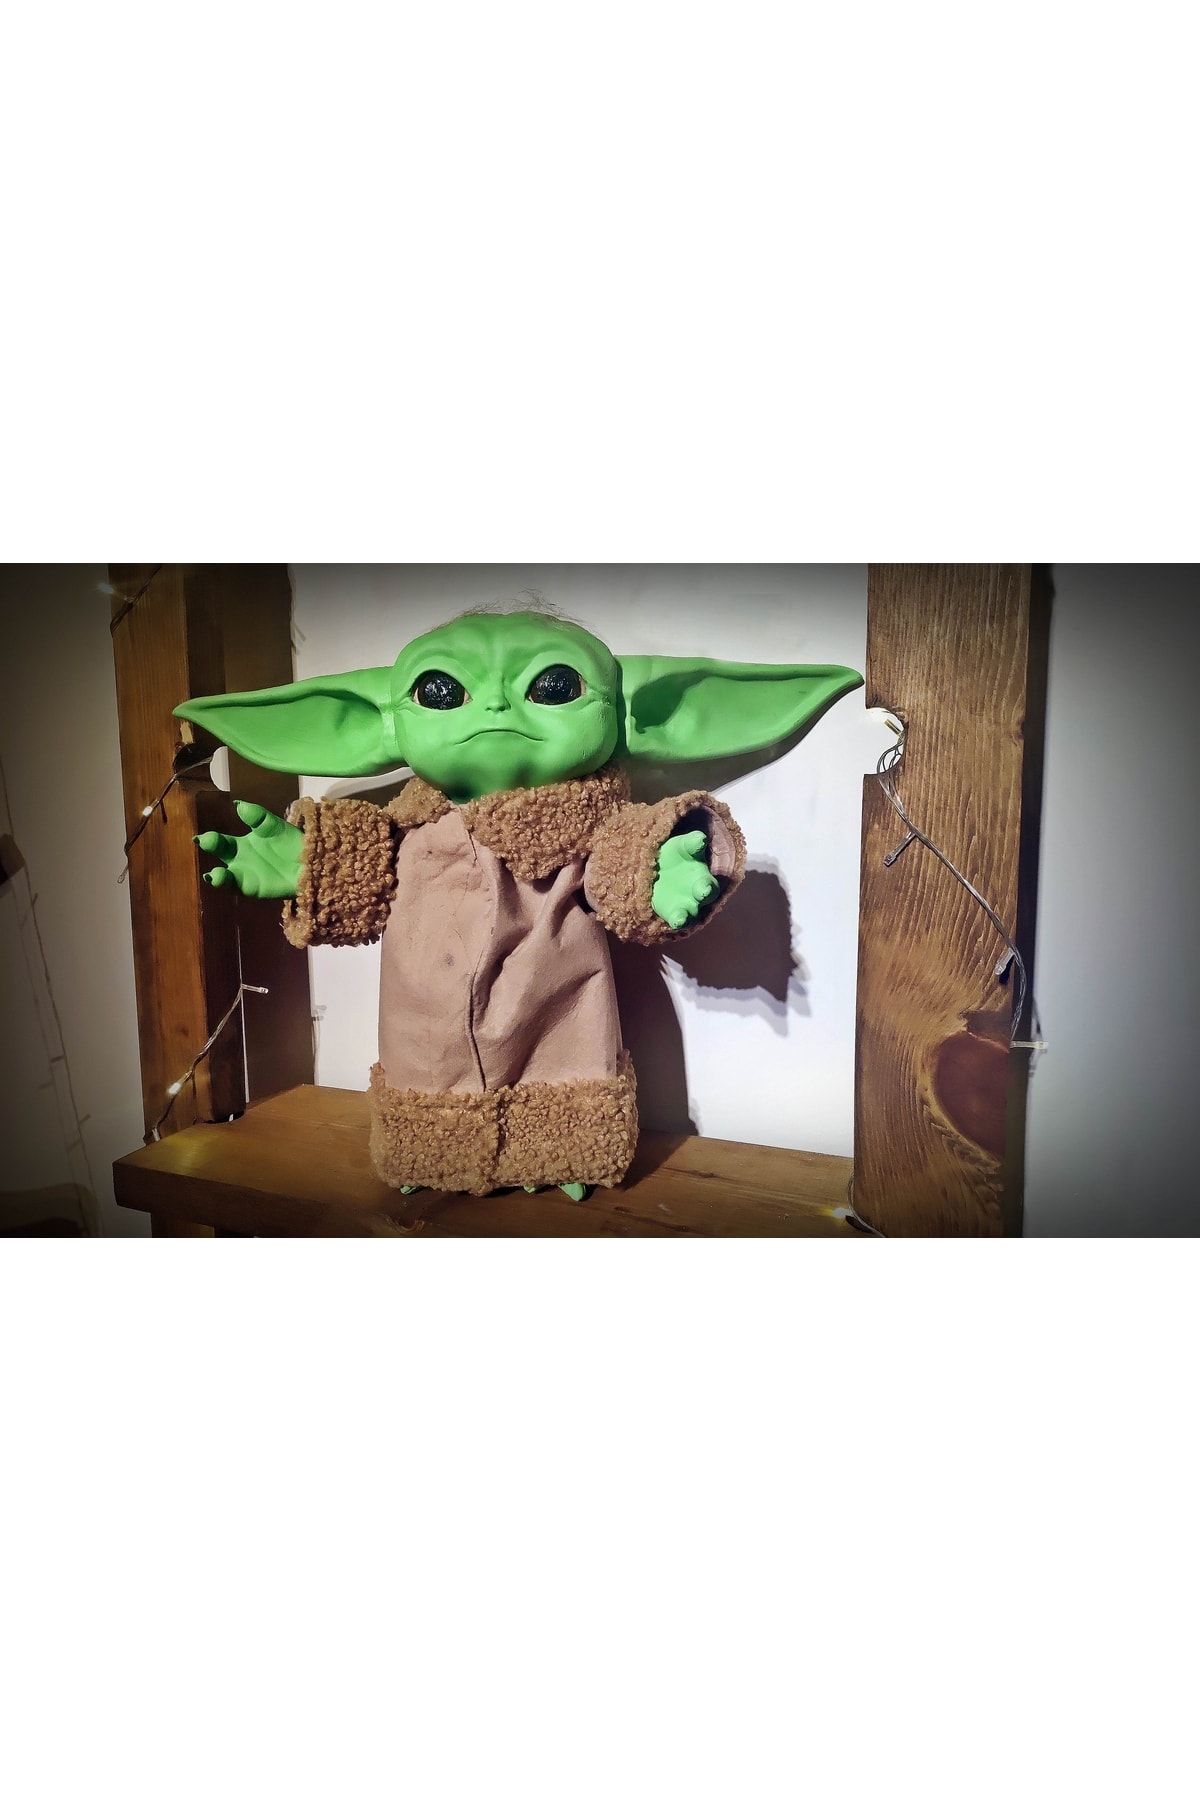 GoodPeople The Mandalorian Baby Yoda Büyük 40cm Figür El Yapımı Kıyafetli Hareket Ettirilebilir Star Wars